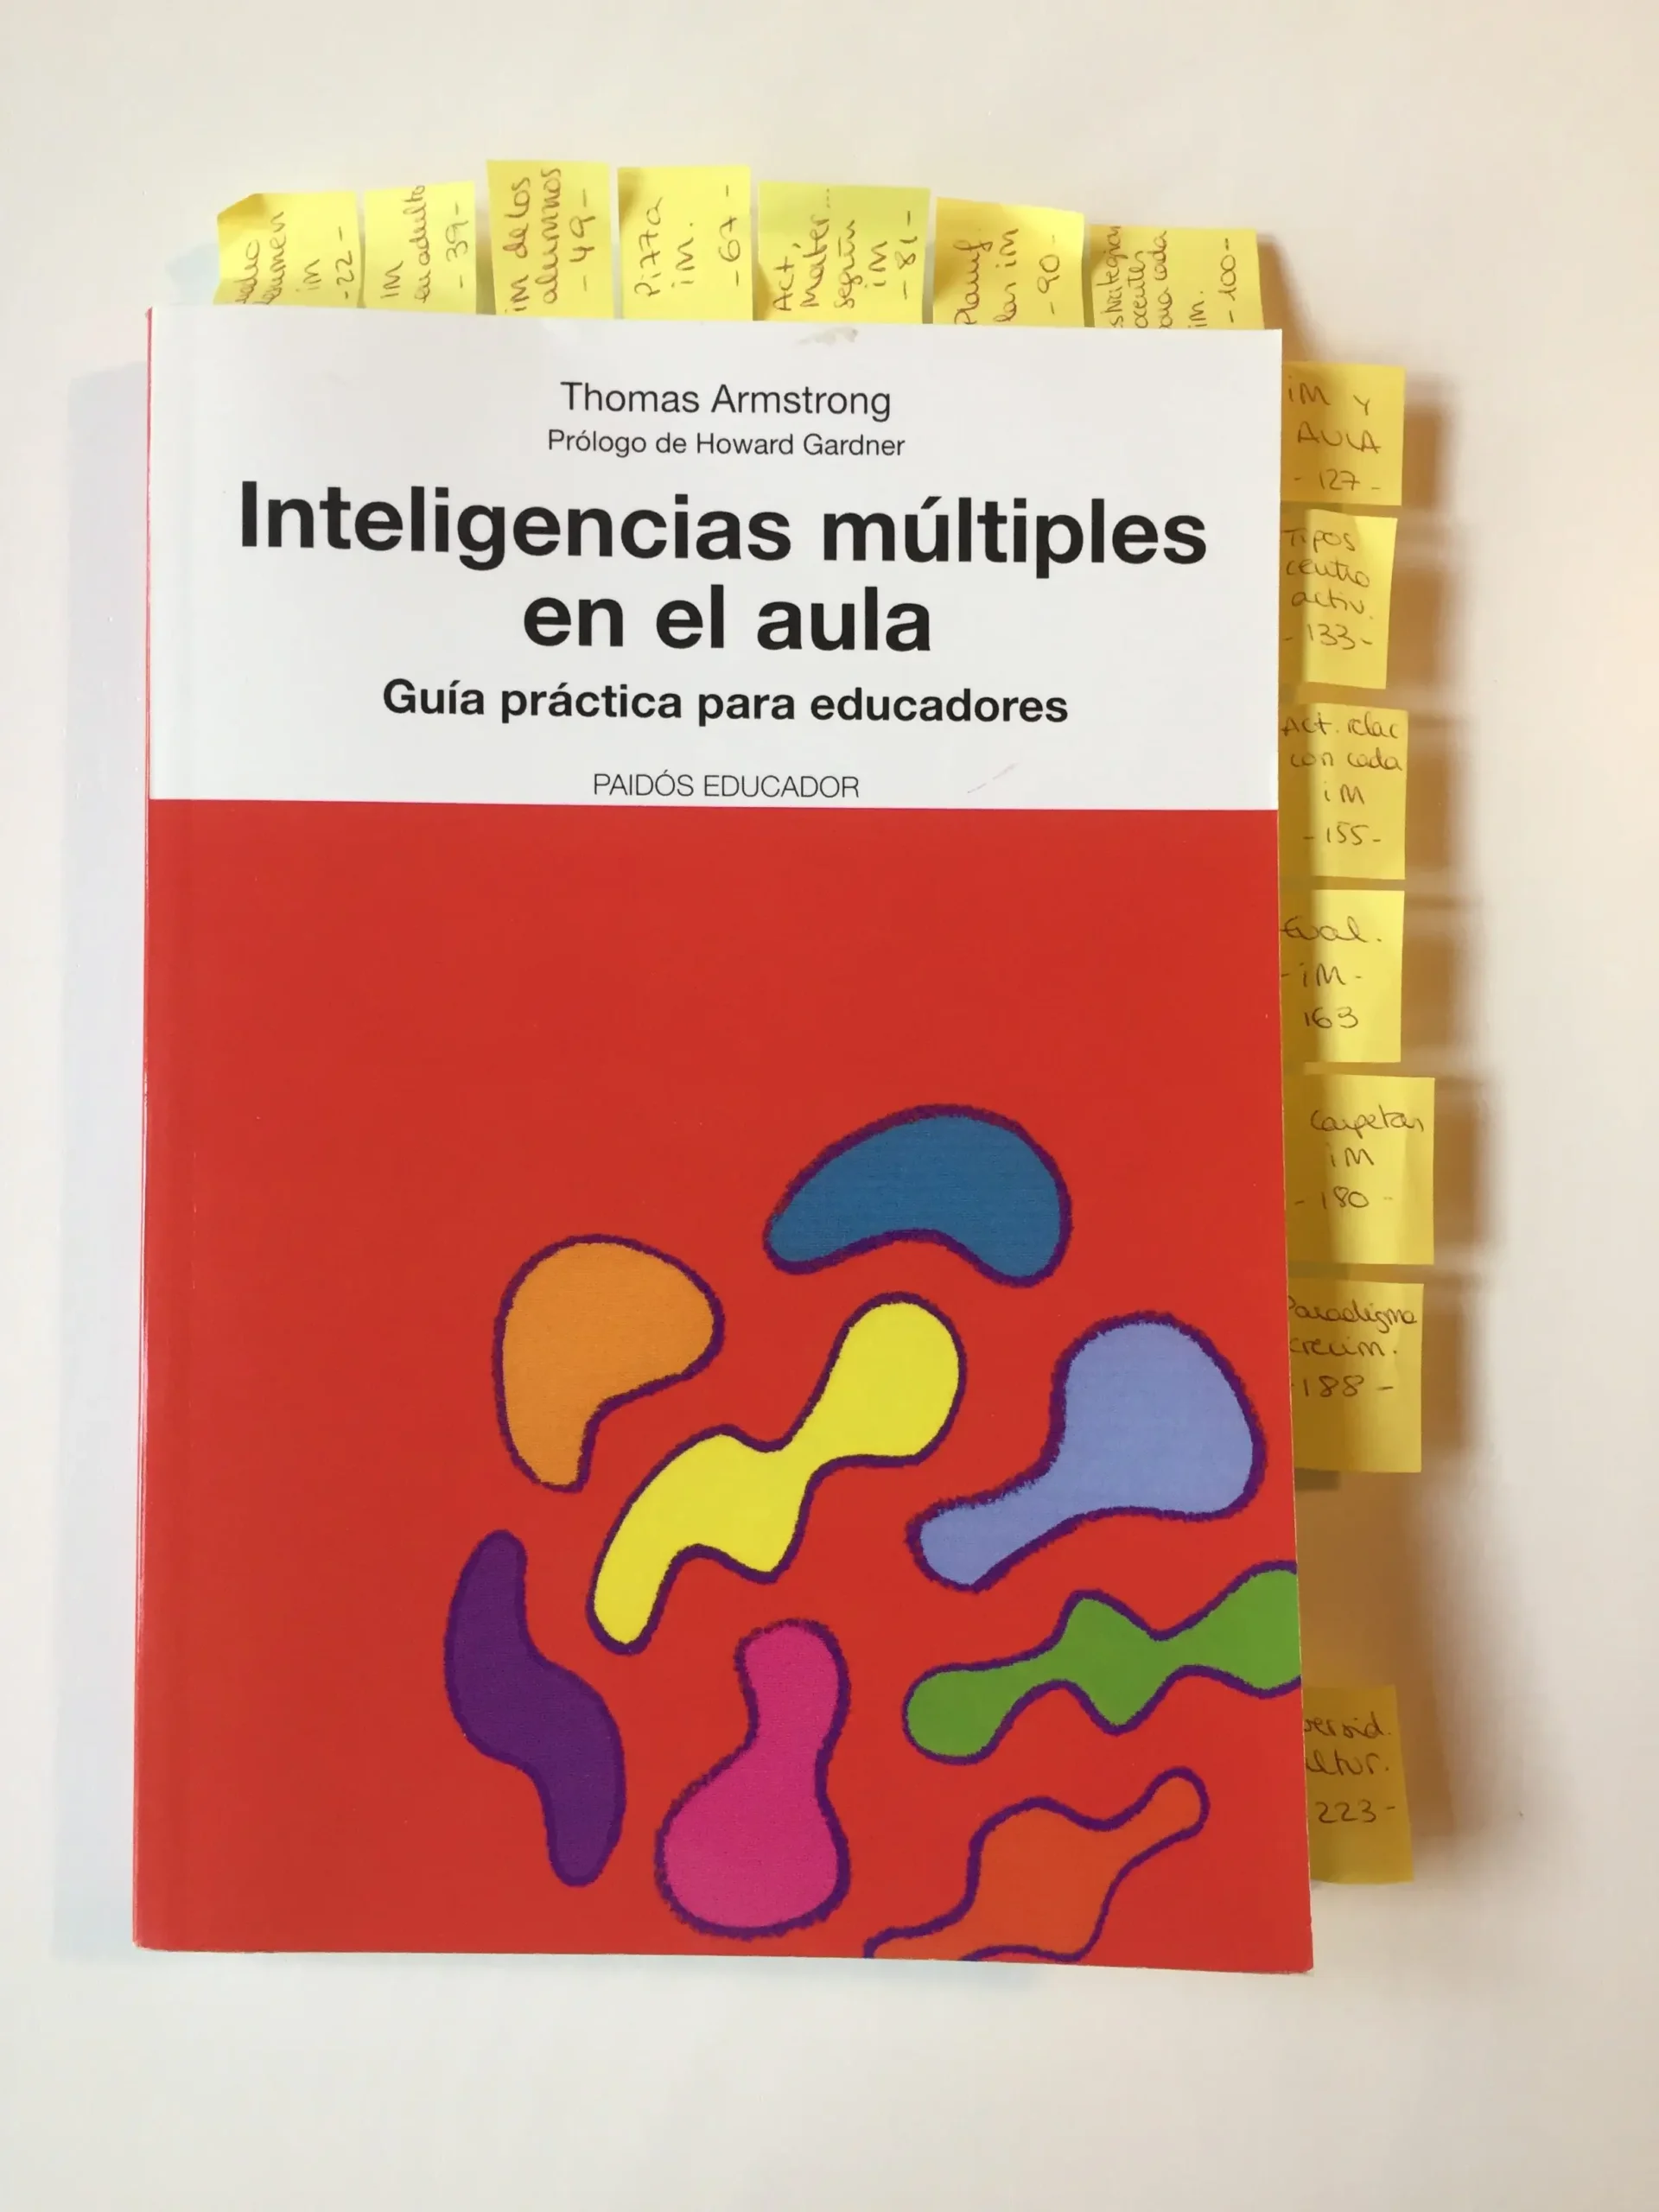 bibliografia de inteligencias multiples segun normas apa - Cómo hacer una bibliografía en formato APA